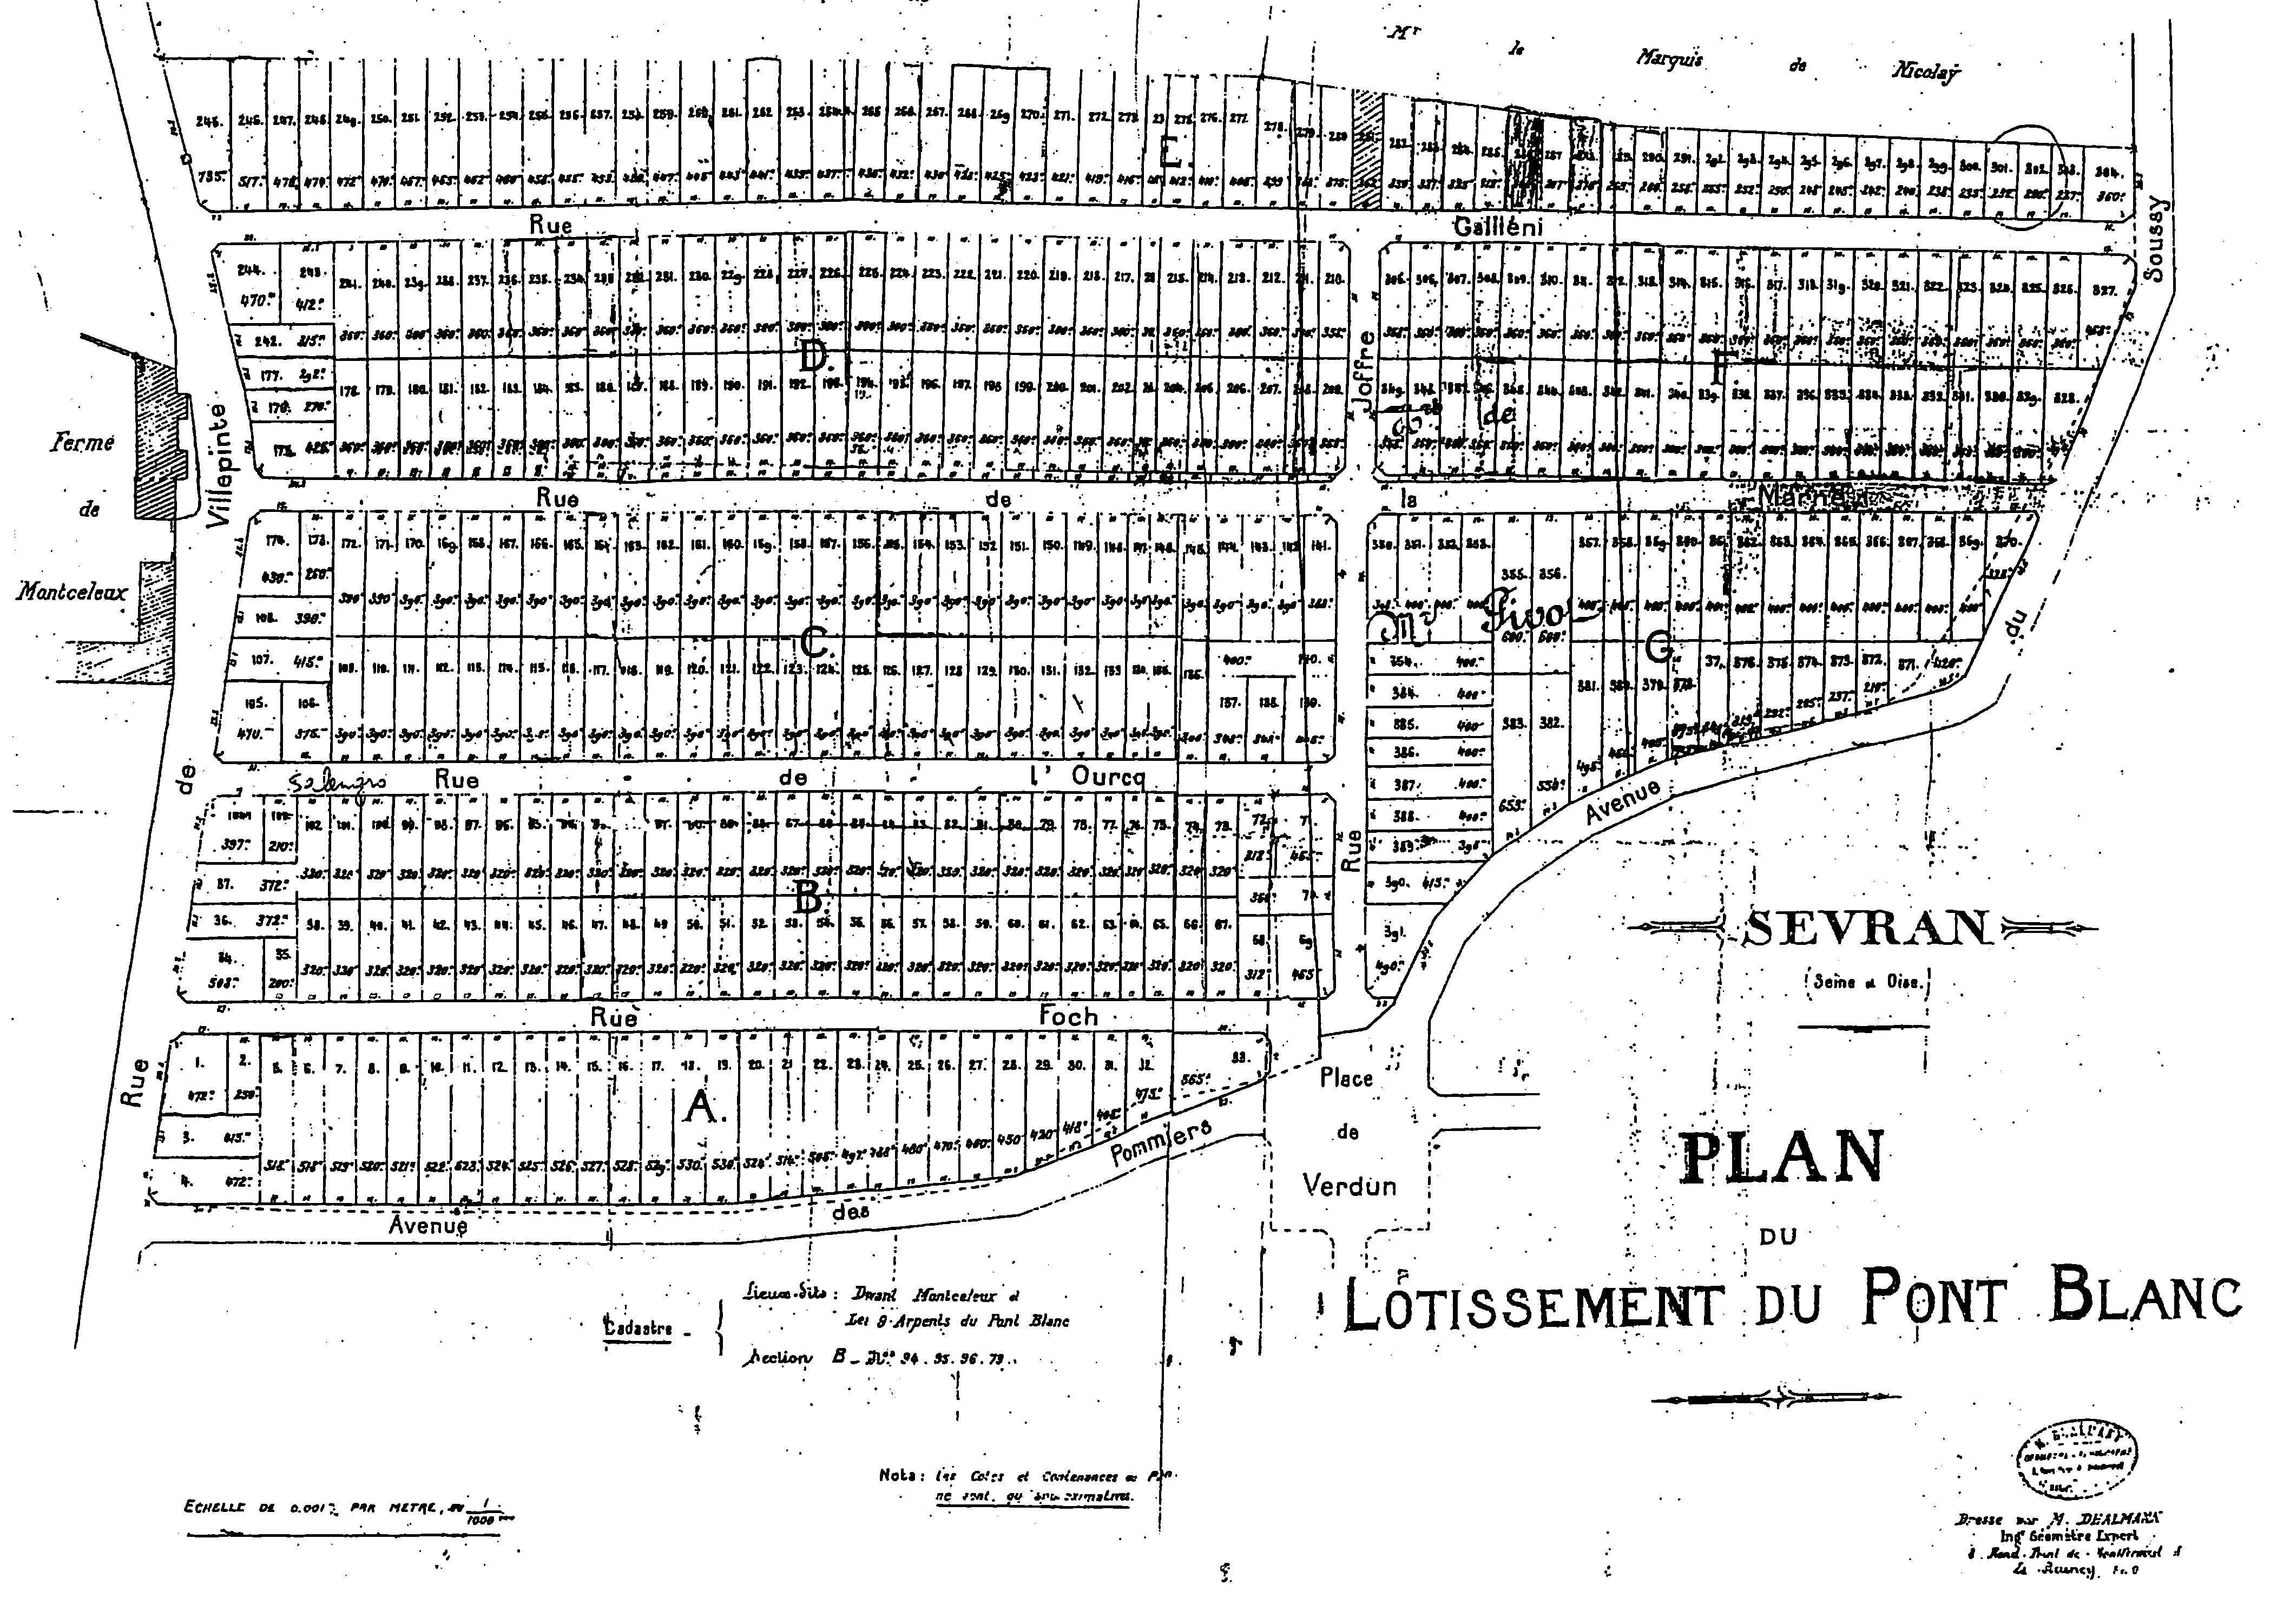 Plan du Pont-Blanc, l'un des premiers lotissements de Sevran, présenté par la société Pharos en 1924. On peut noter à l'ouest la présence de la ferme de Montceleux. Source : Archives municipales de Sevran.